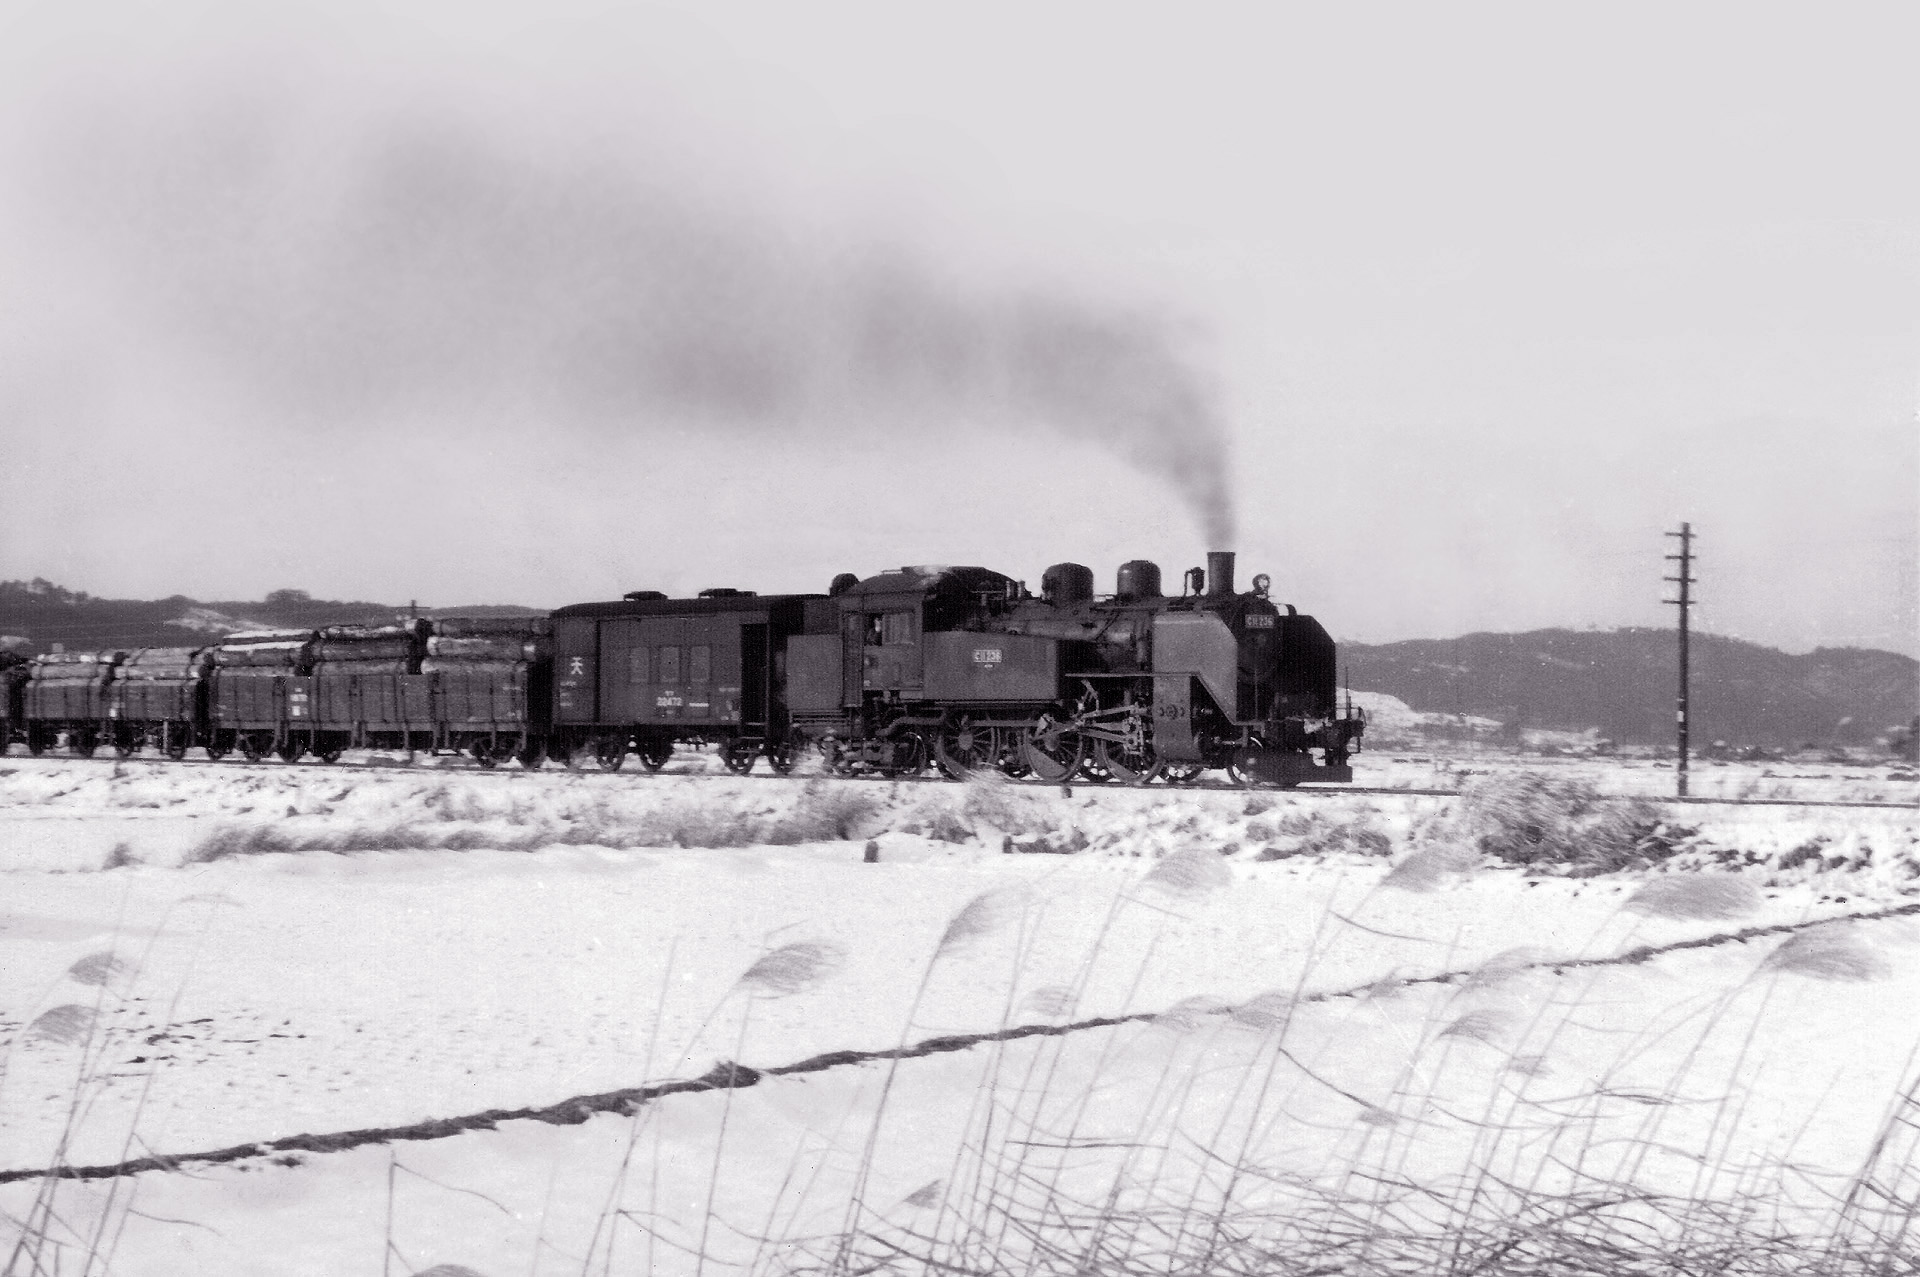 鉄道 蒸気機関車 貨物列車 セピア色の風景 壁紙19x1277 壁紙館